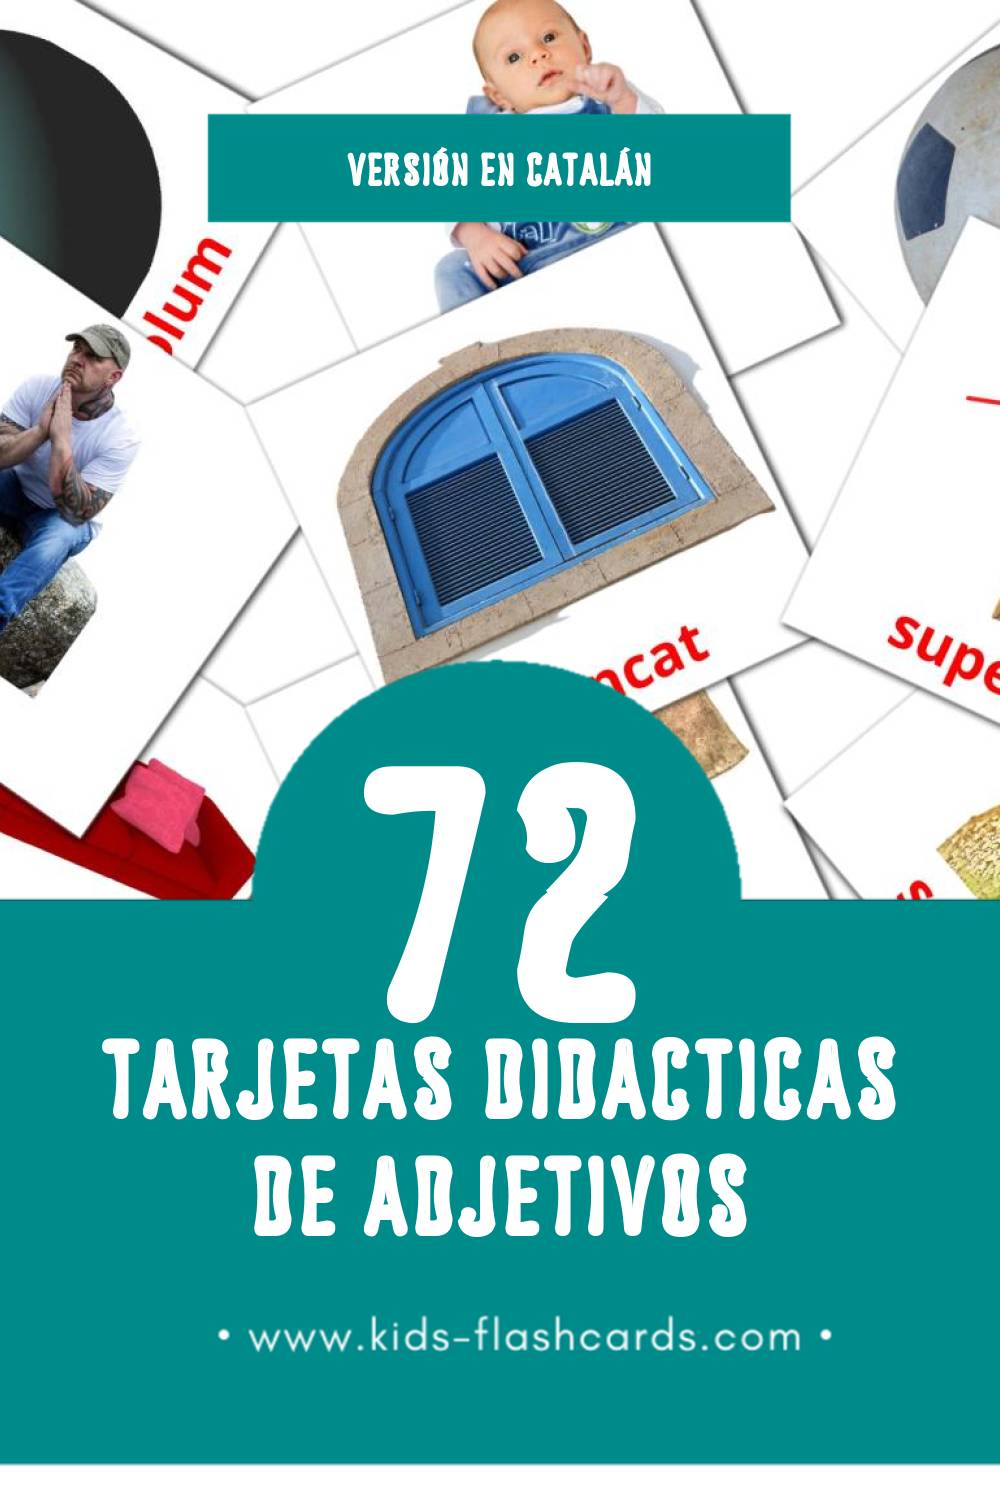 Tarjetas visuales de Adjectius para niños pequeños (72 tarjetas en Catalán)